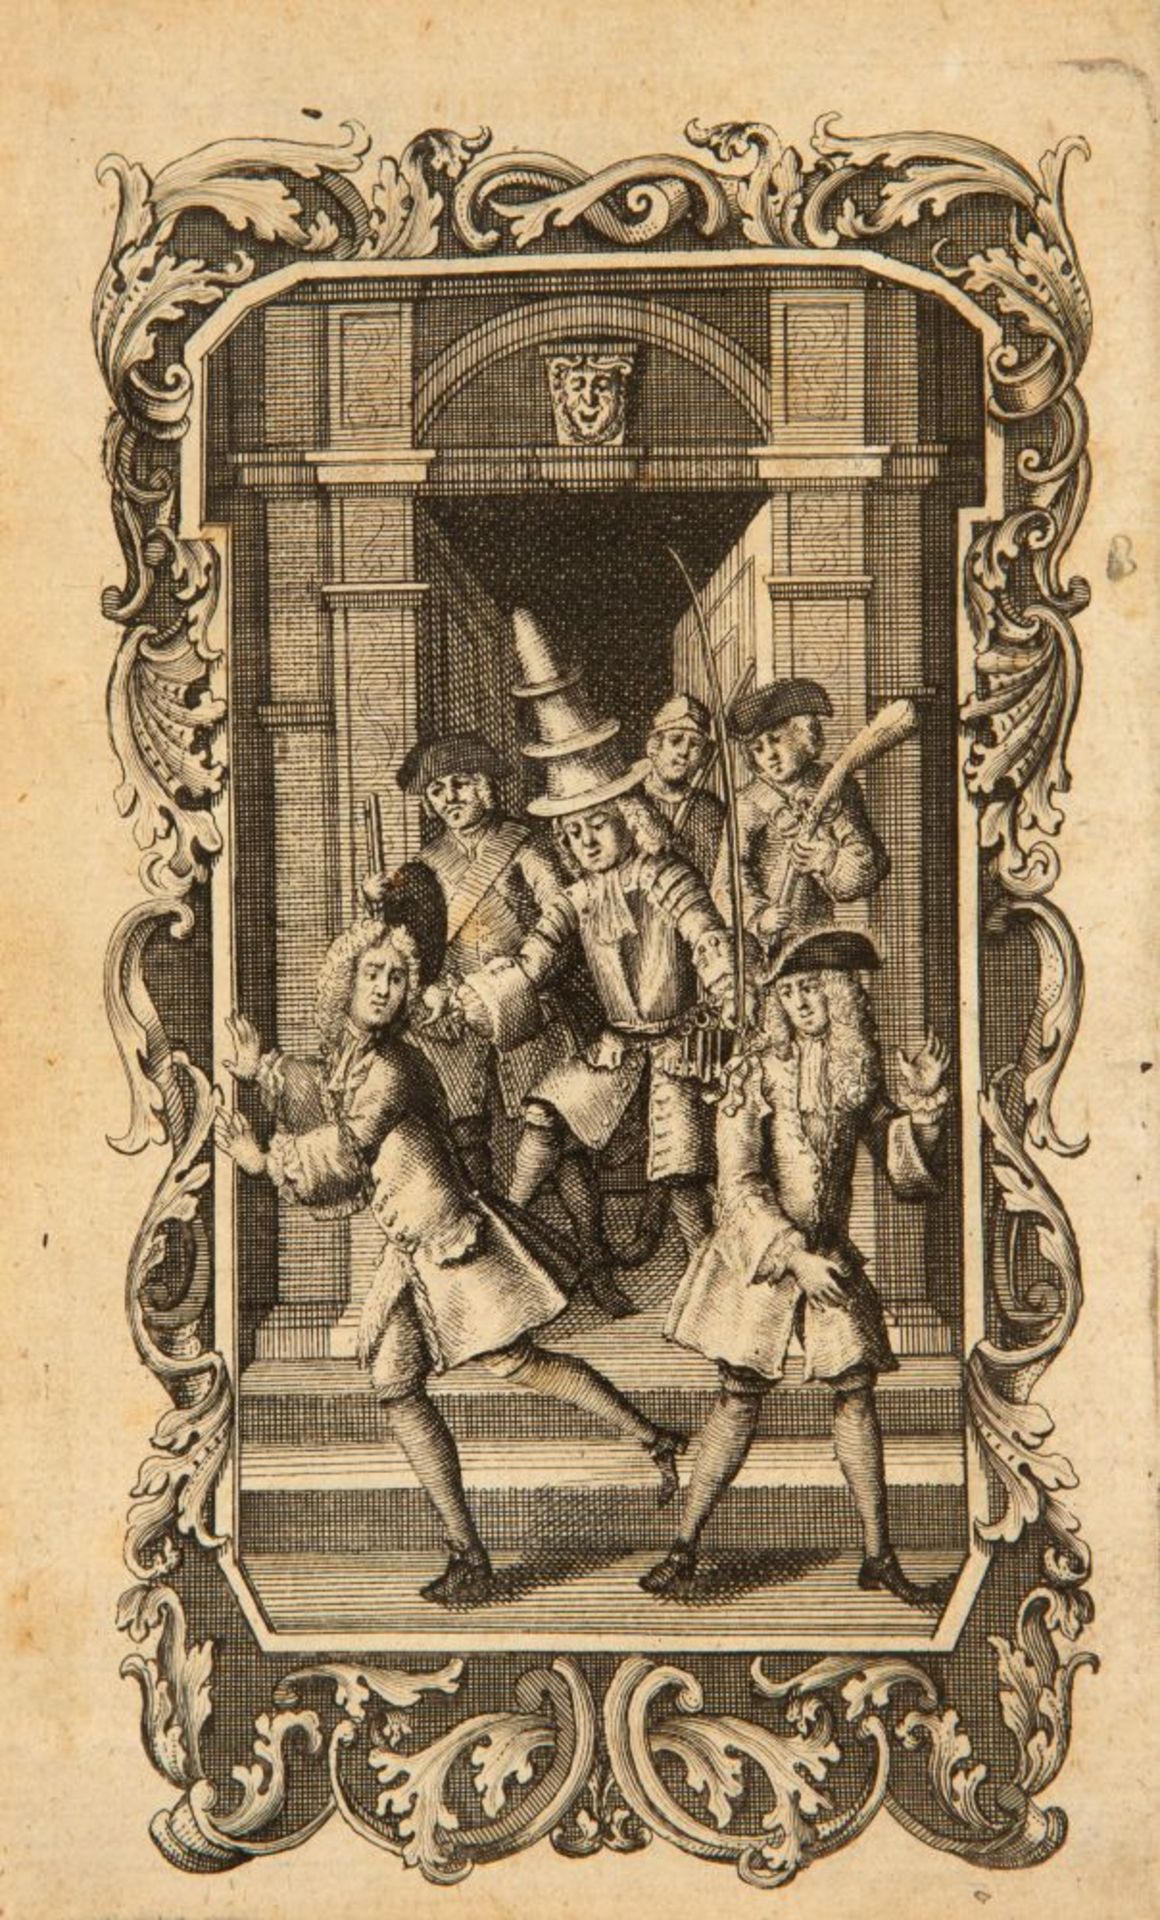 J. Swift, Mährgen von der Tonne. Altona 1748.